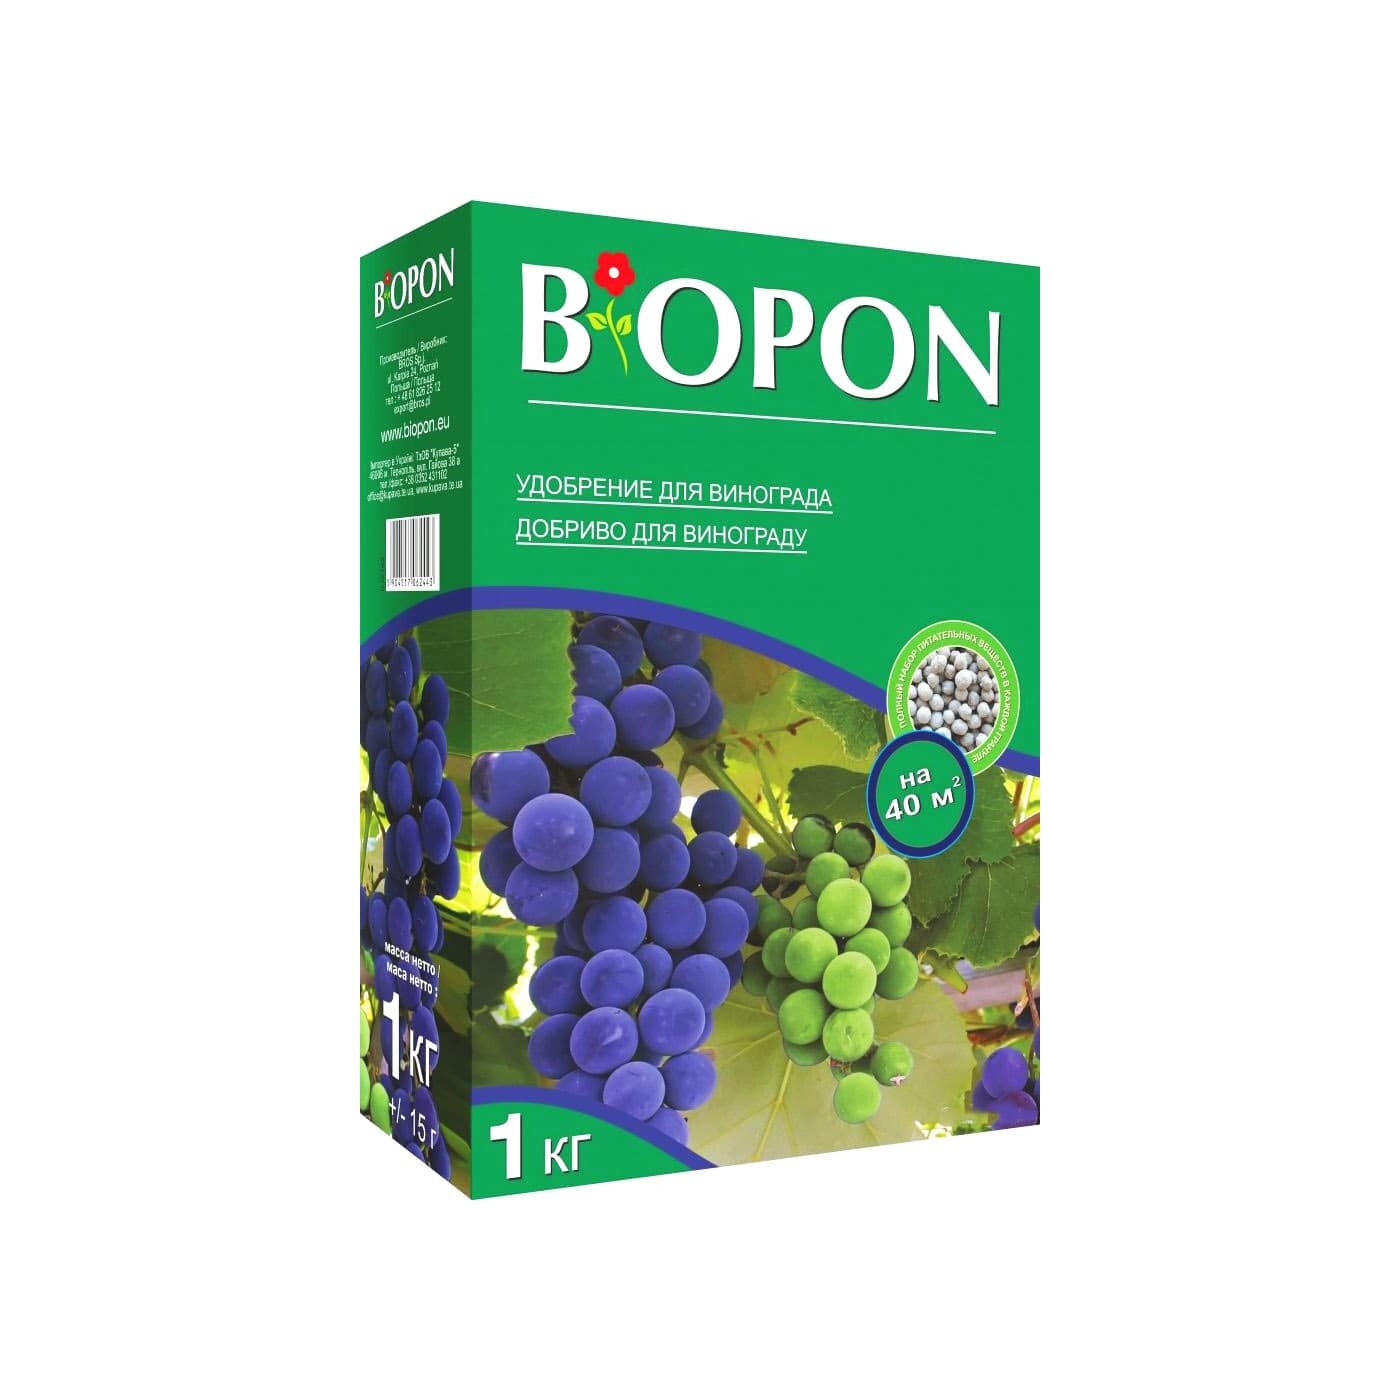 Мінеральне Добриво для винограду ТМ "BIOPON" 1кг